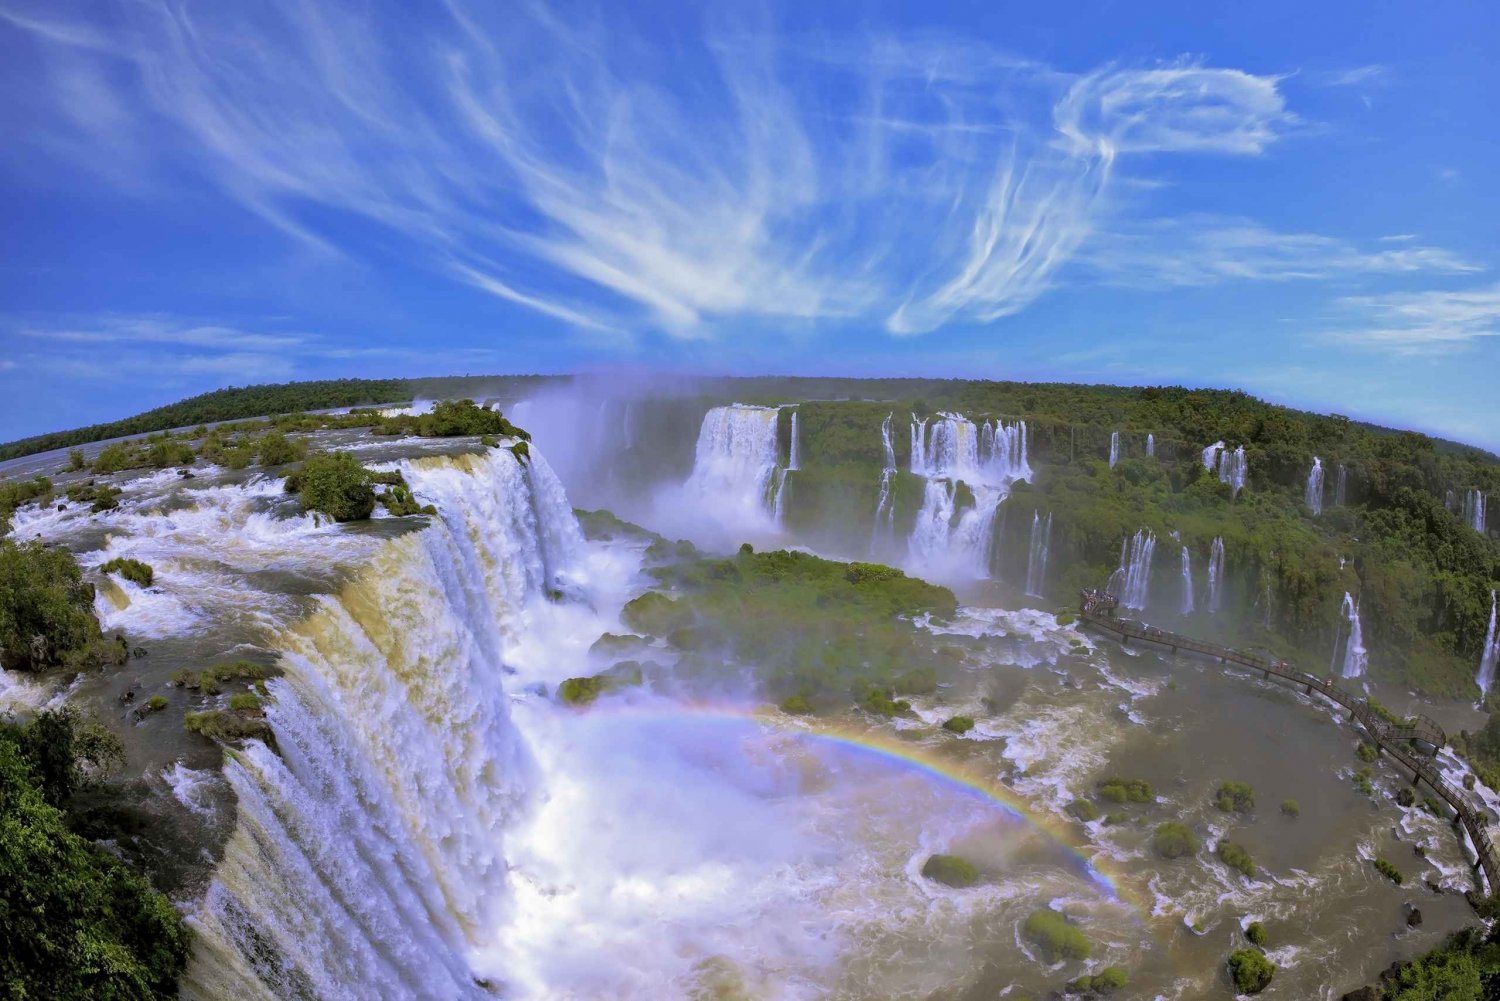 Cataratas del Iguazú: Excursión Lado Argentino desde Puerto Iguazú